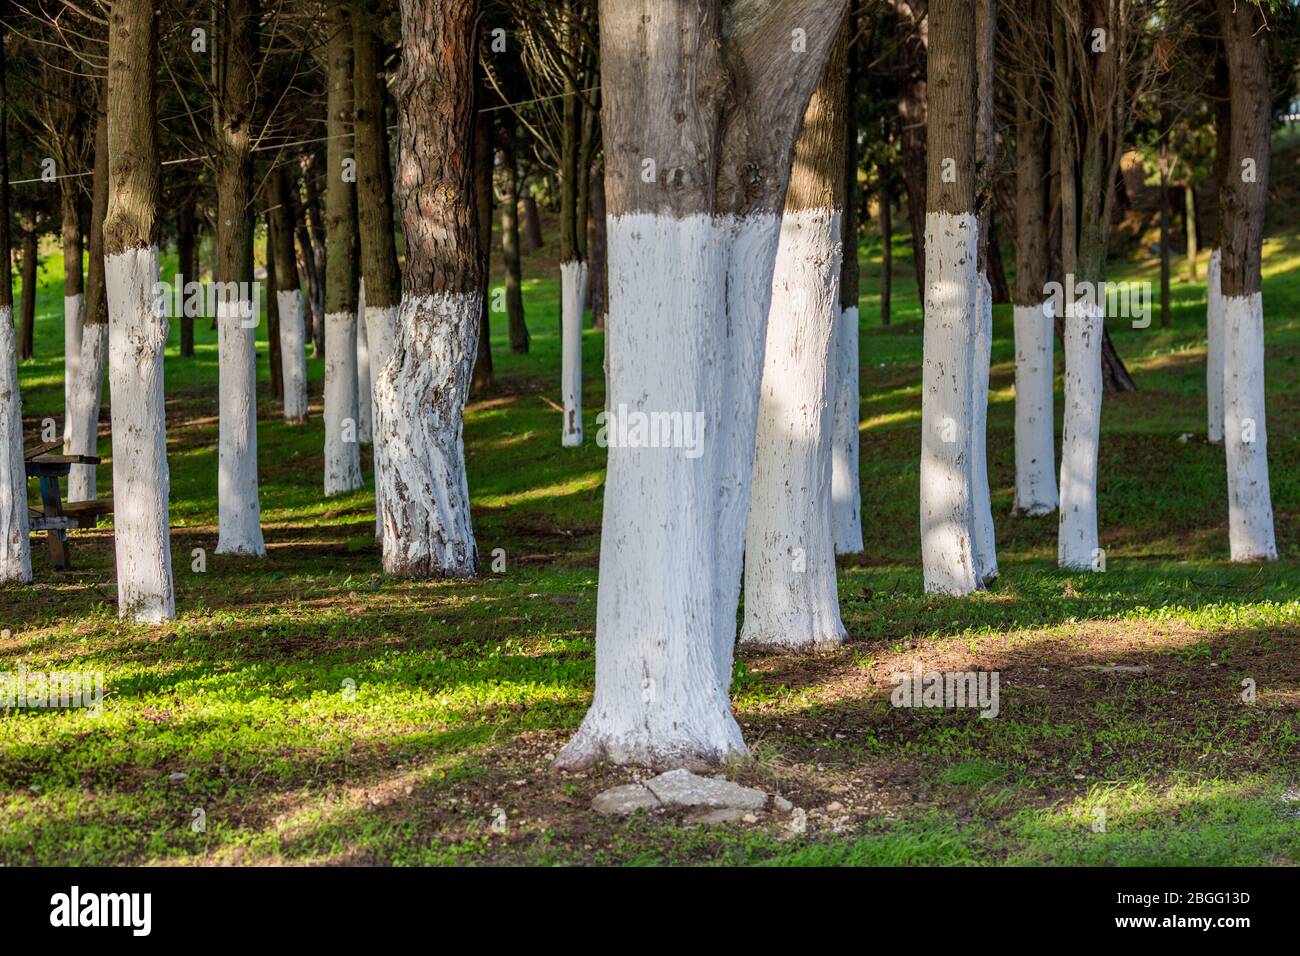 Wald mit weiß getünchten Kiefernstämmen in Symmetrie schafft schöne Perspektive Effekt. Selektiver Fokus. Frisches grünes Gras zwischen den Bäumen. Nordgriechenland in der Nähe des Dorfes Fanari Stockfoto